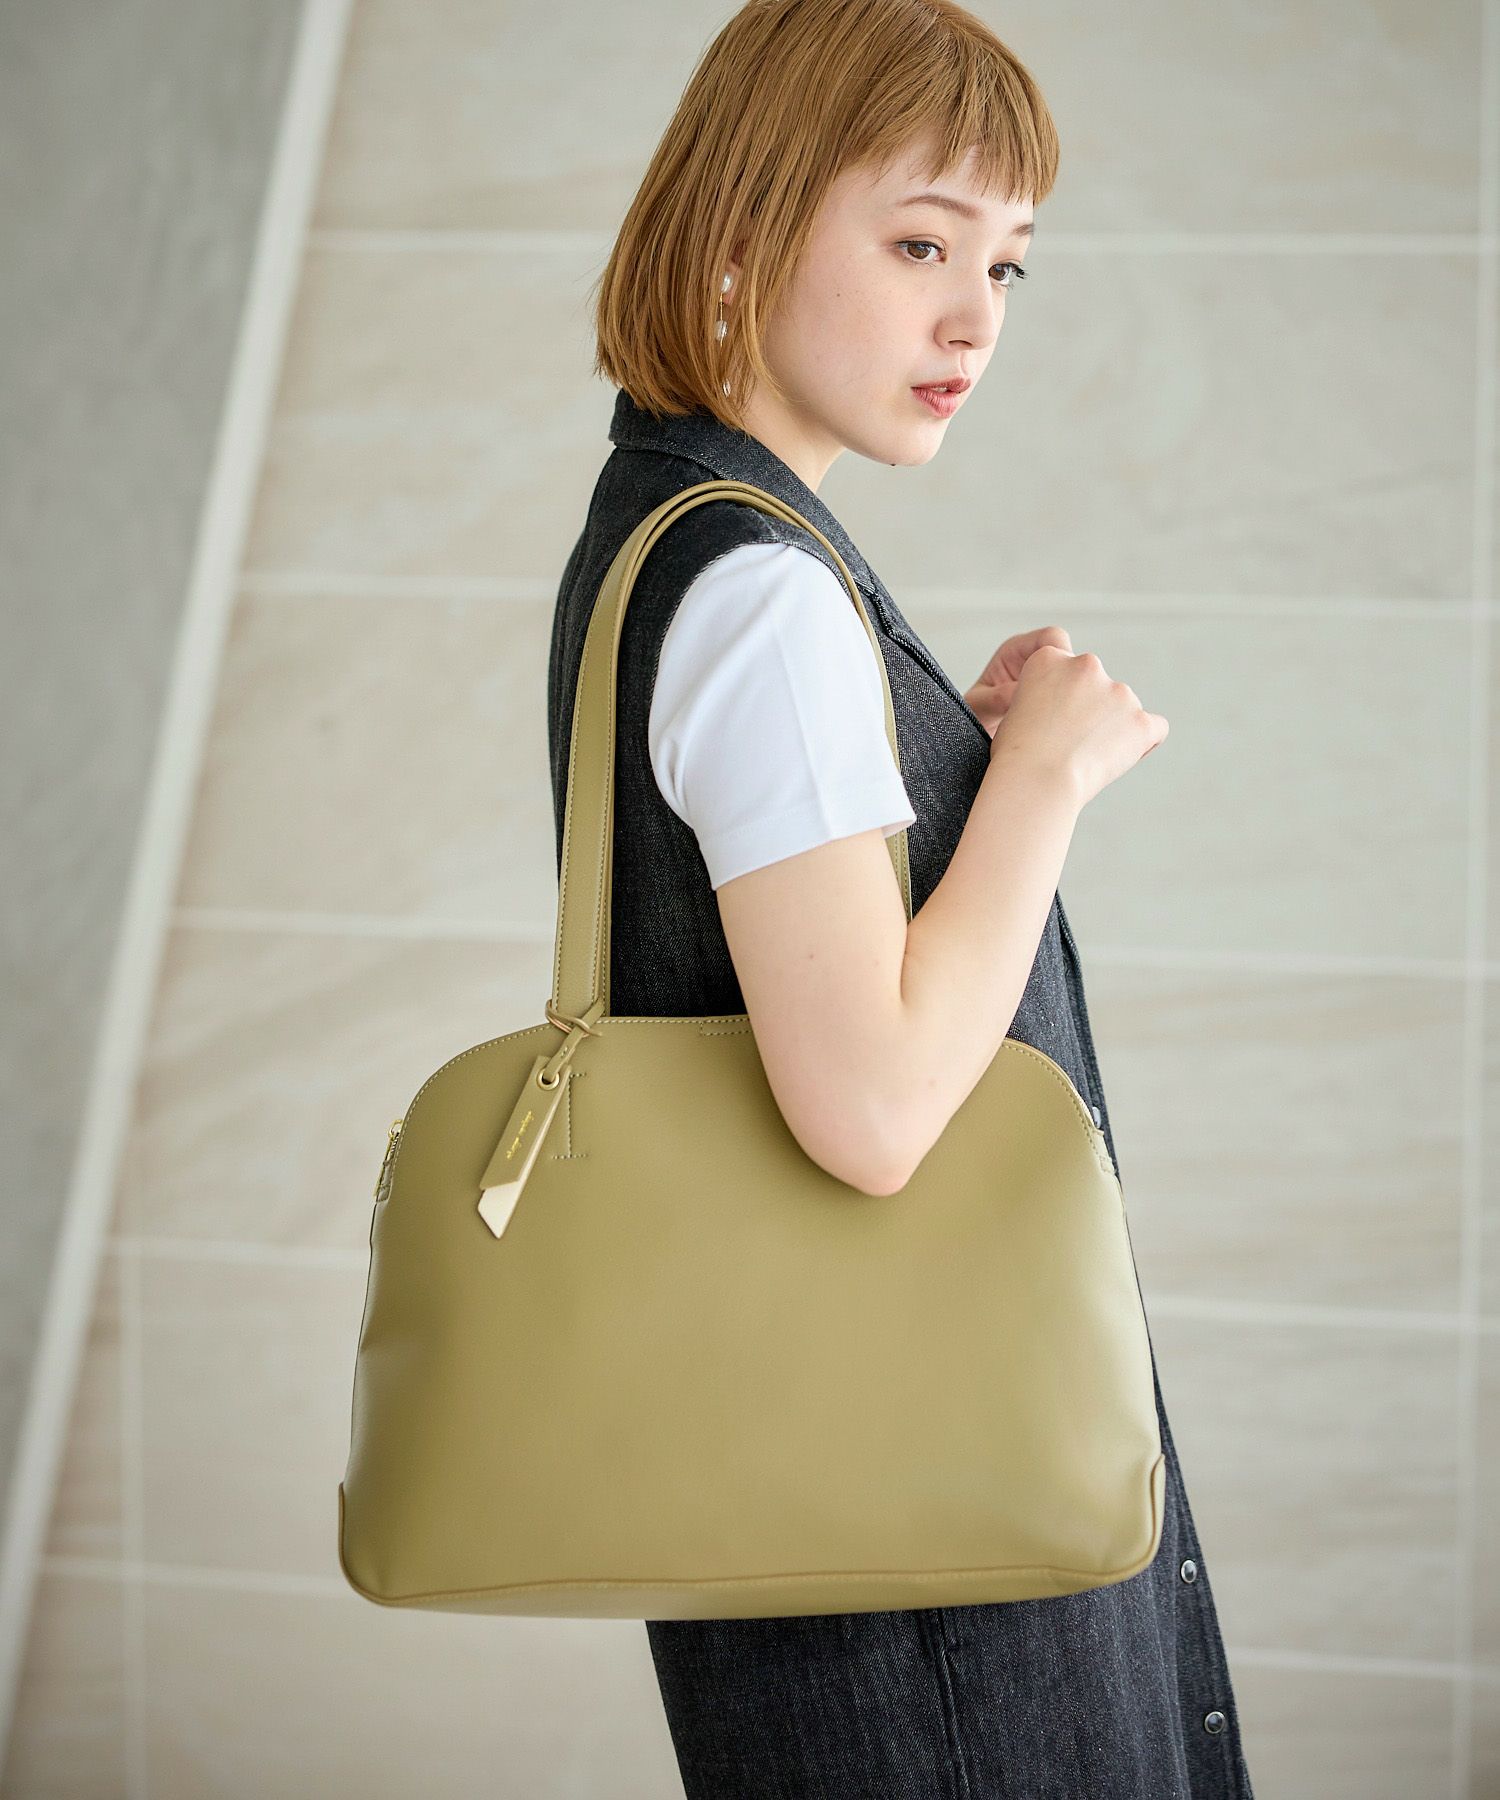 30代女性におすすめな人気の通勤バッグは、かるいかばんのA4トートバッグ